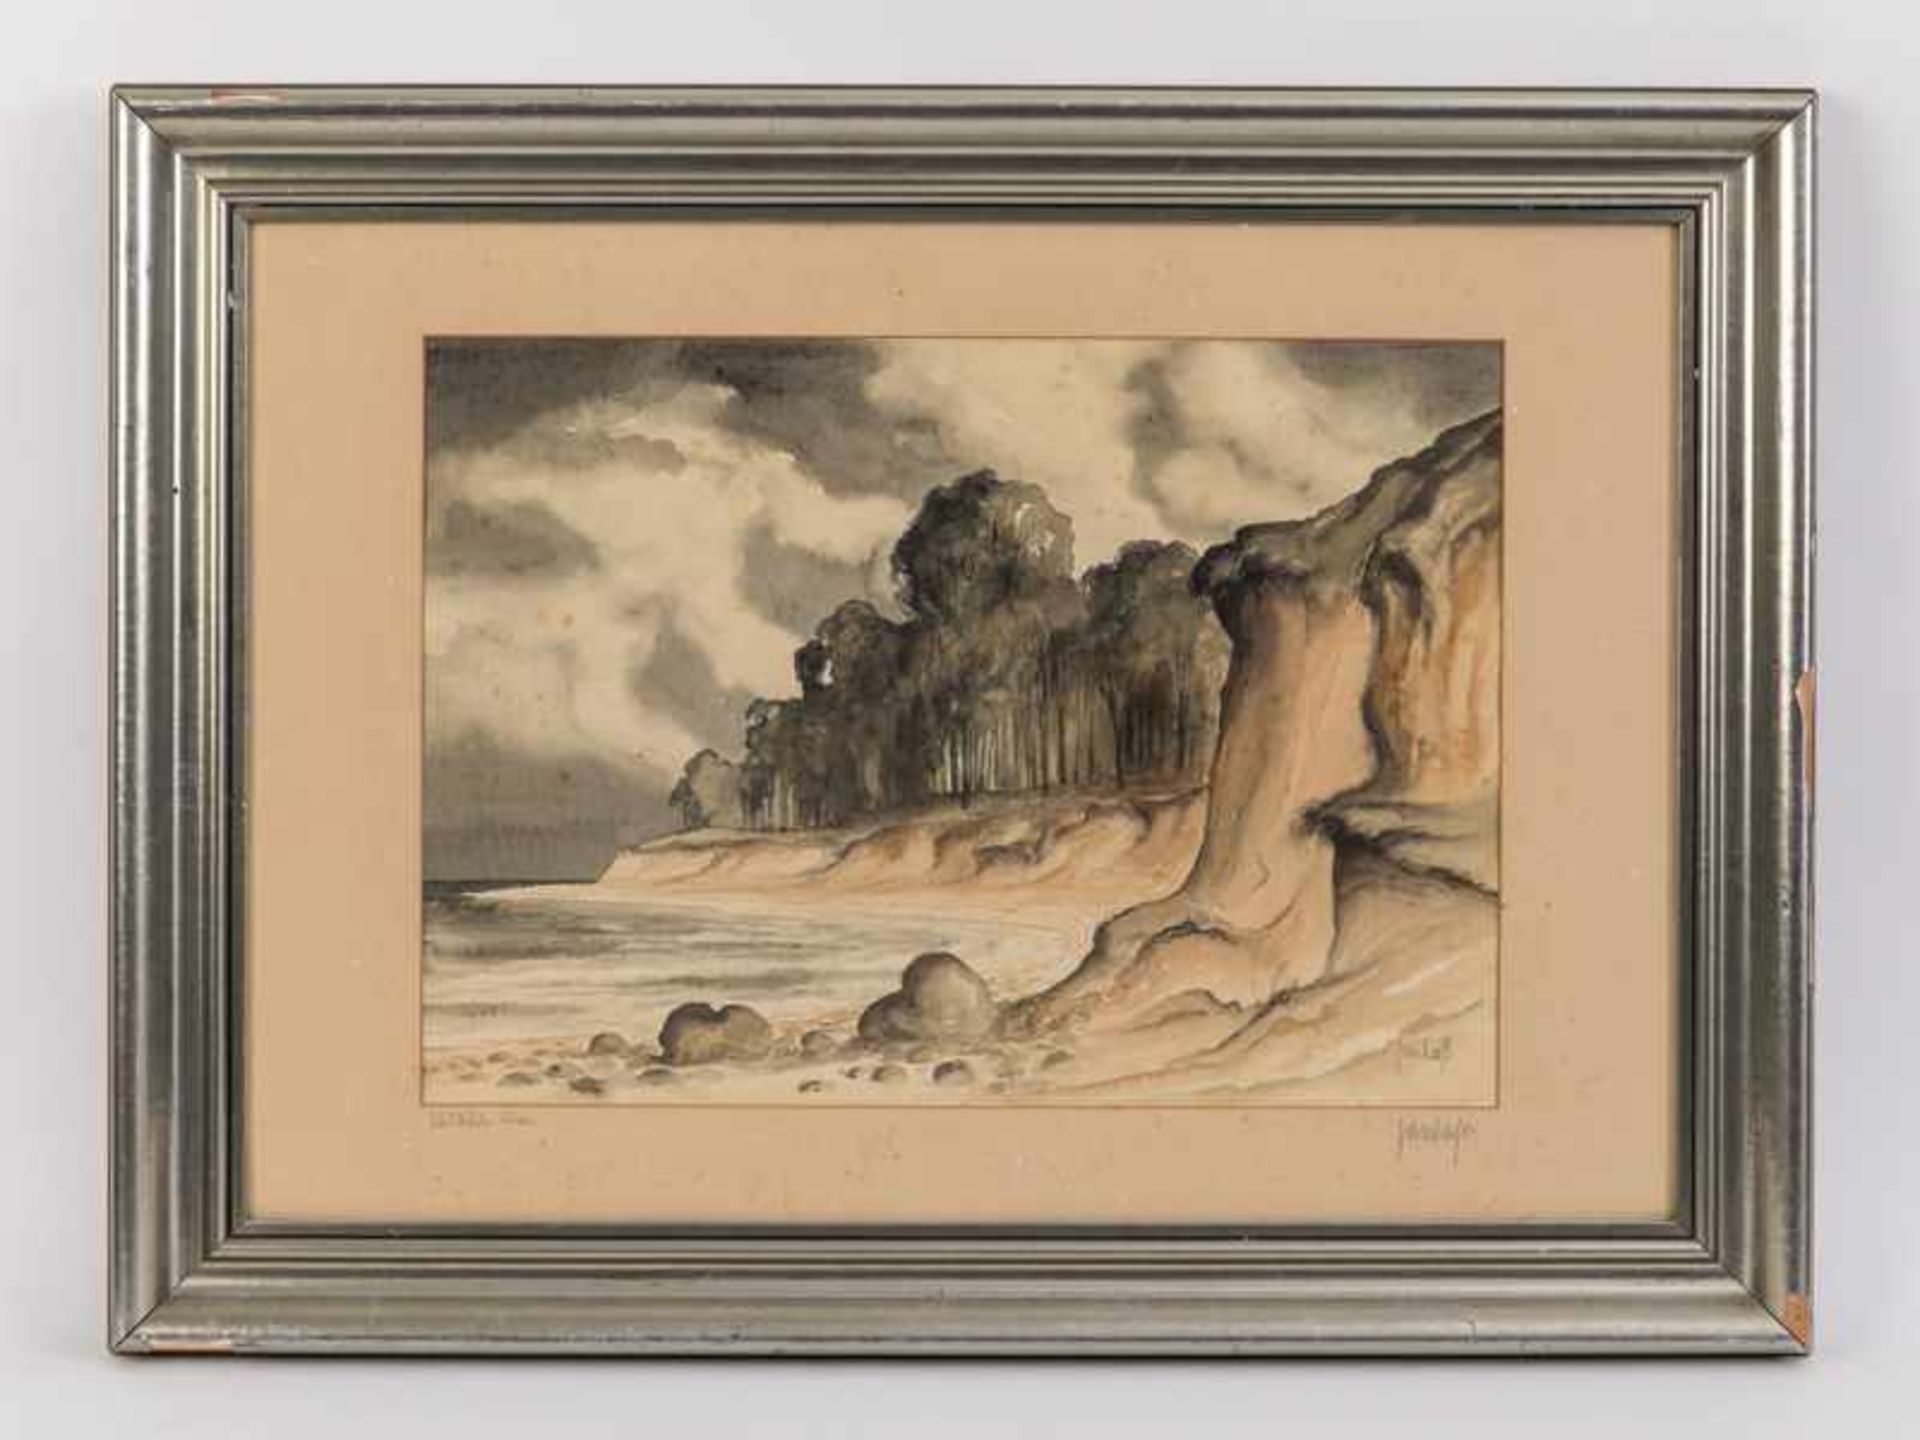 Laß, Jan (1890 - 1958). Aquarell; "Südküste Alsen", Ostsee-Steilküstenlandschaft der dänischen Insel